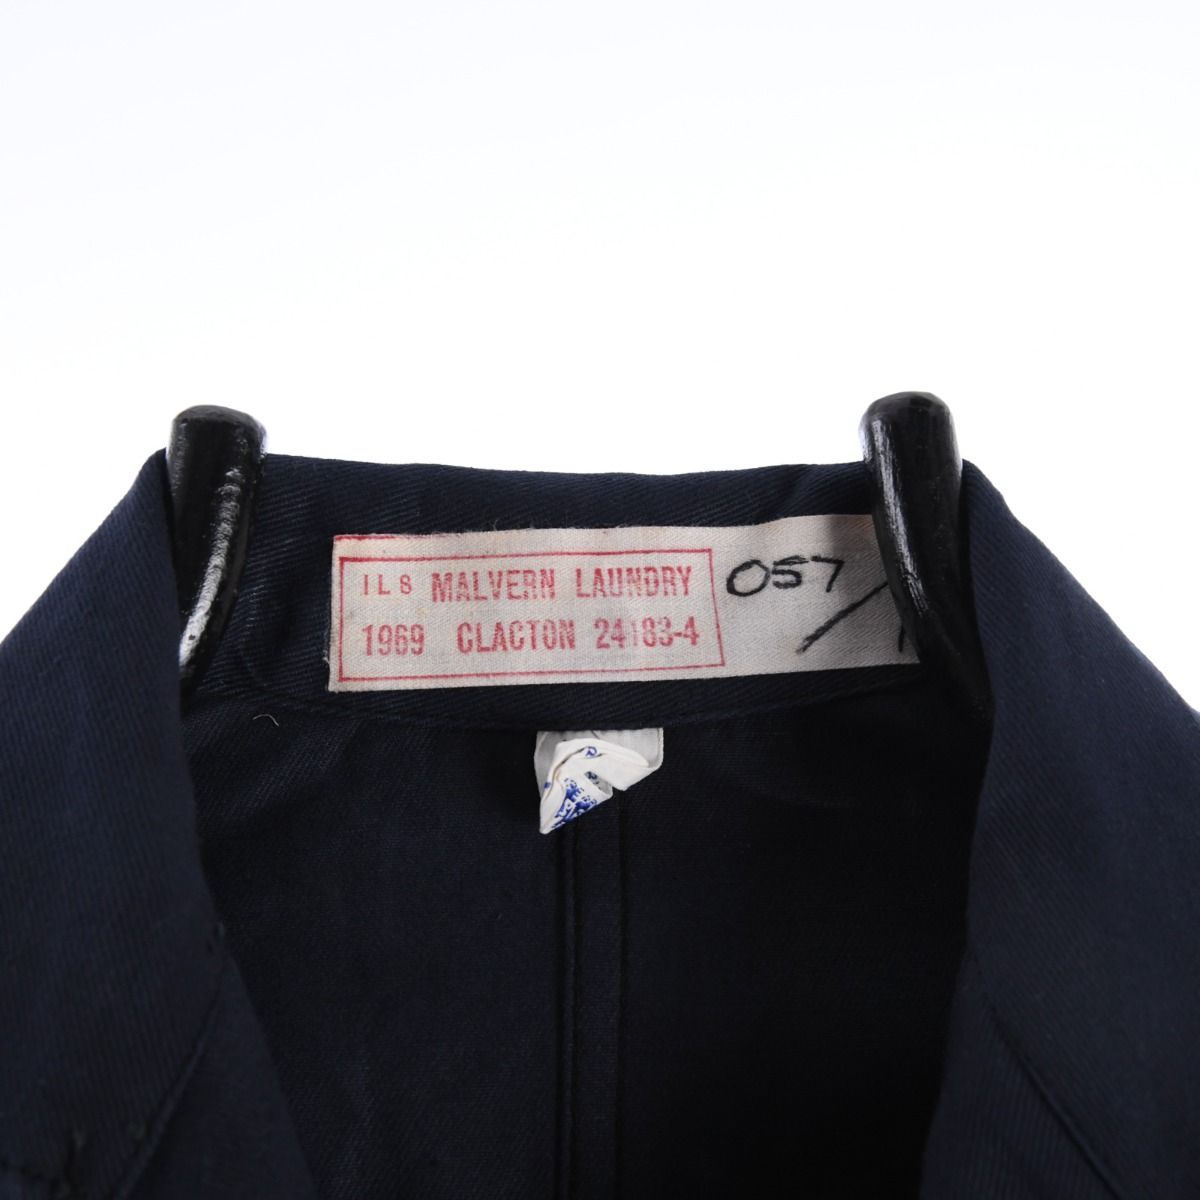 Vintage 1960s Whitehouse Textiles Sanforized British Workwear Chore Jacket